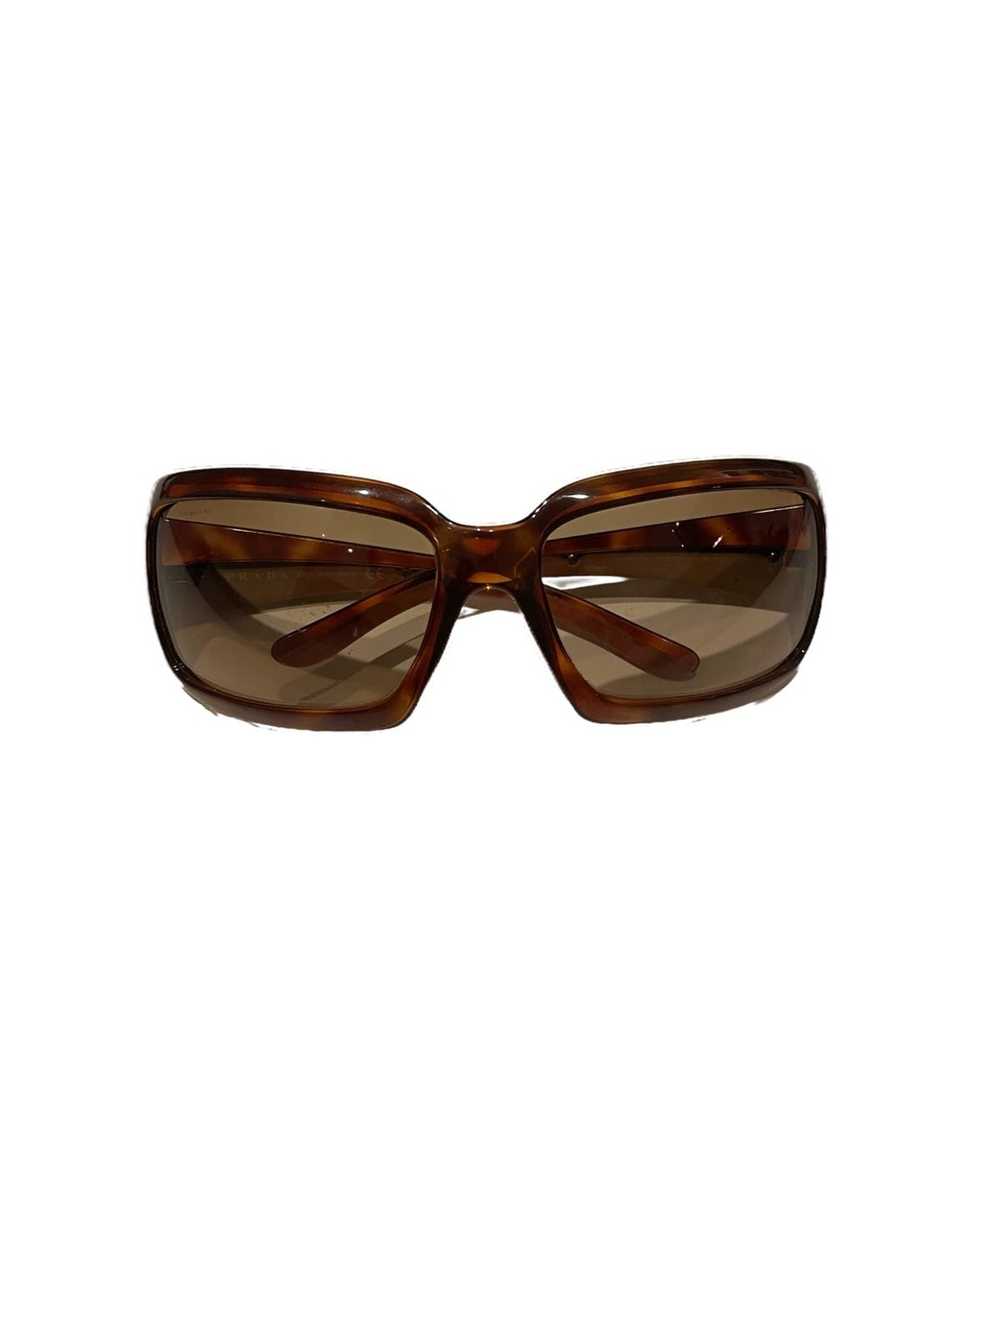 Prada × Vintage Authentic Vintage Prada Sunglasse… - image 1